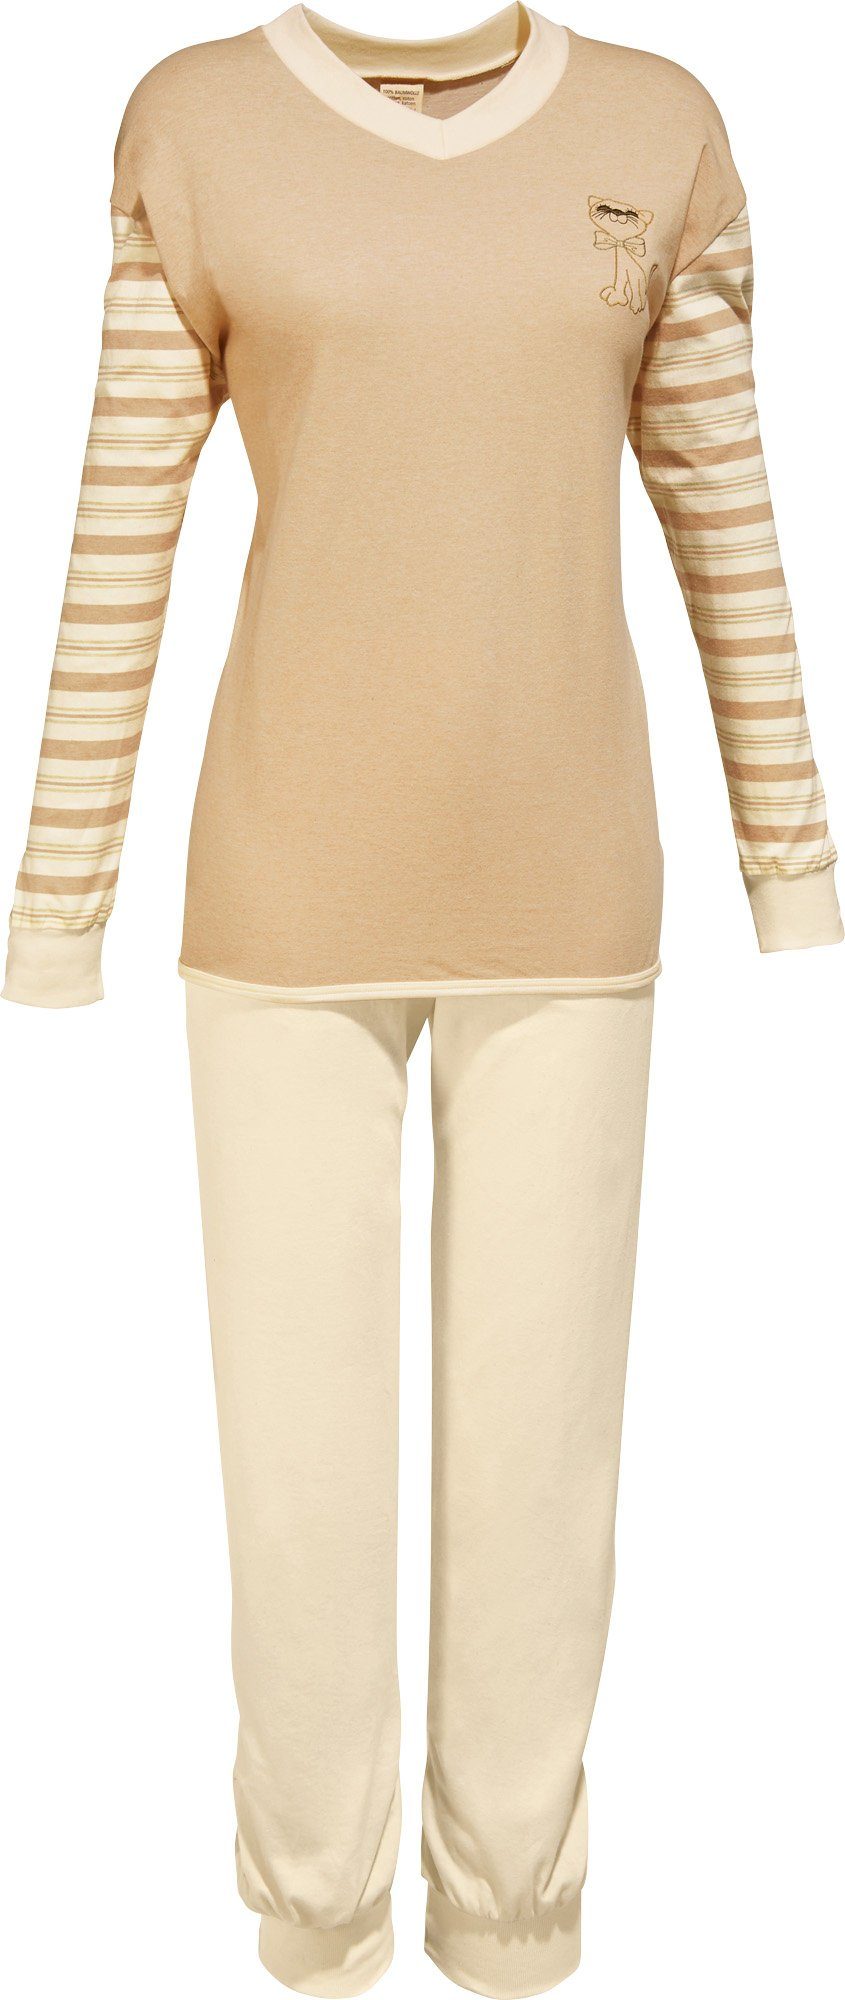 götting Pyjama Damen-Schlafanzug Streifen naturbelassen Single-Jersey